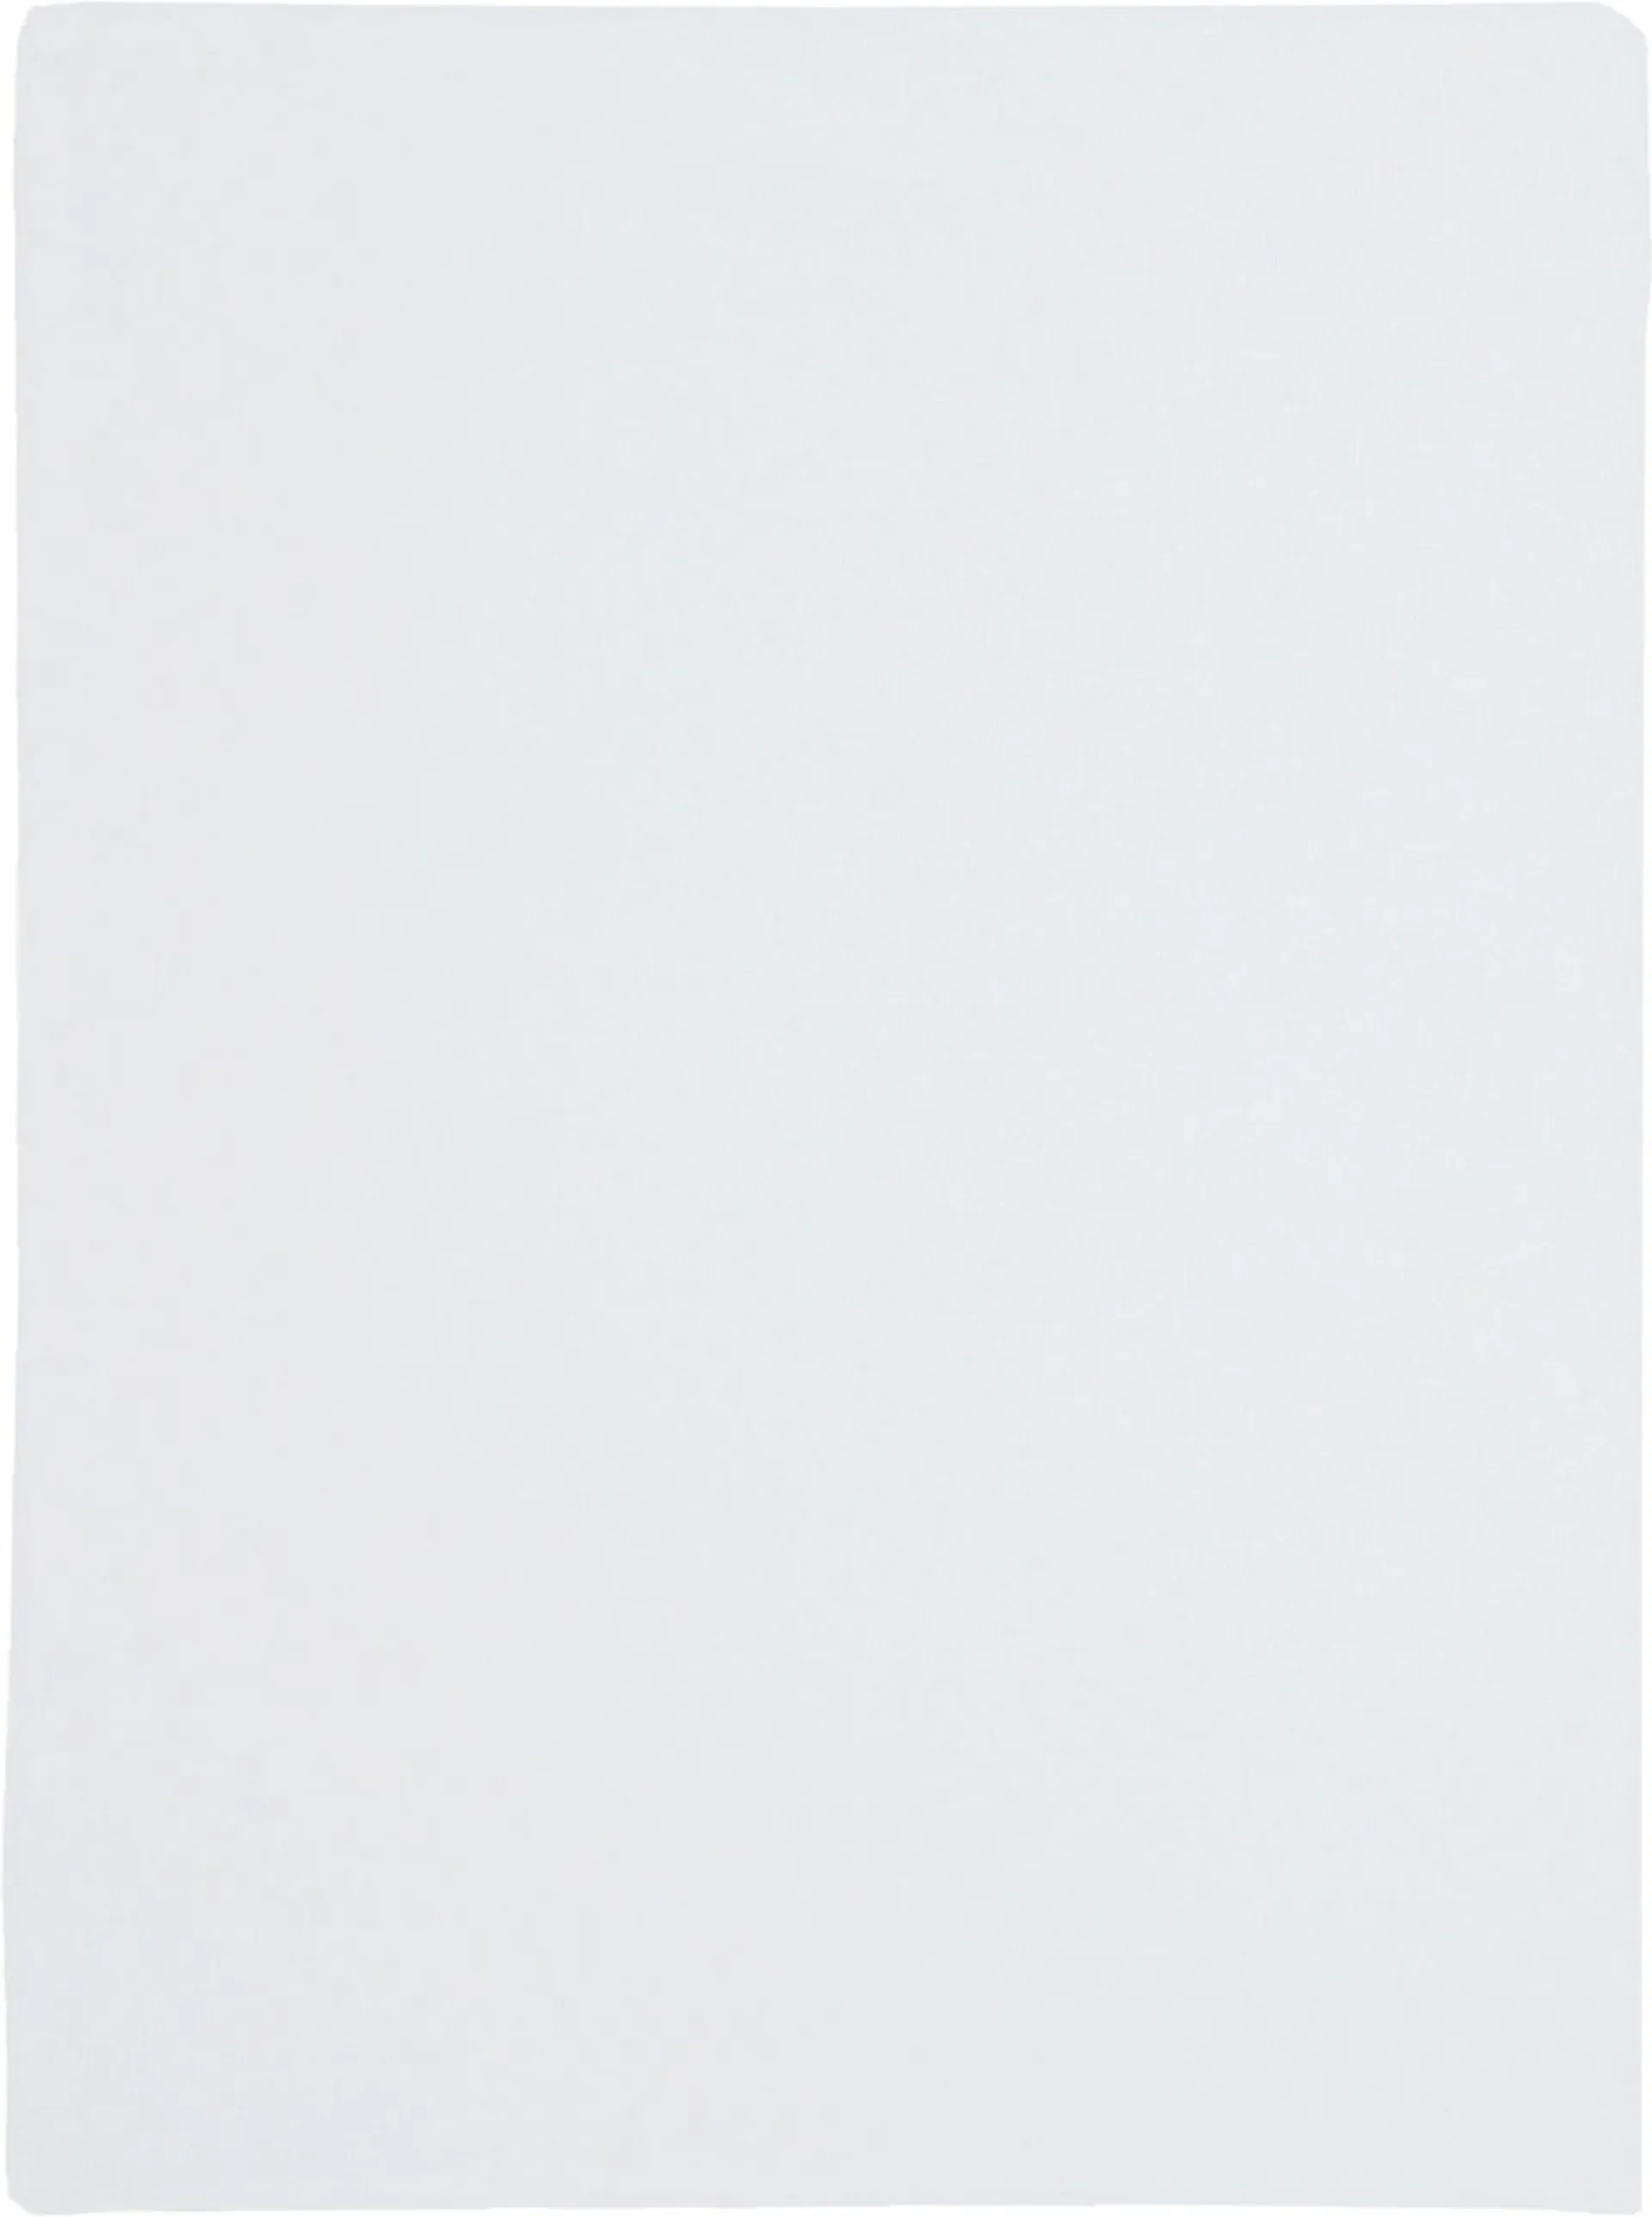 House patjansuoja 90 x 200 cm valkoinen